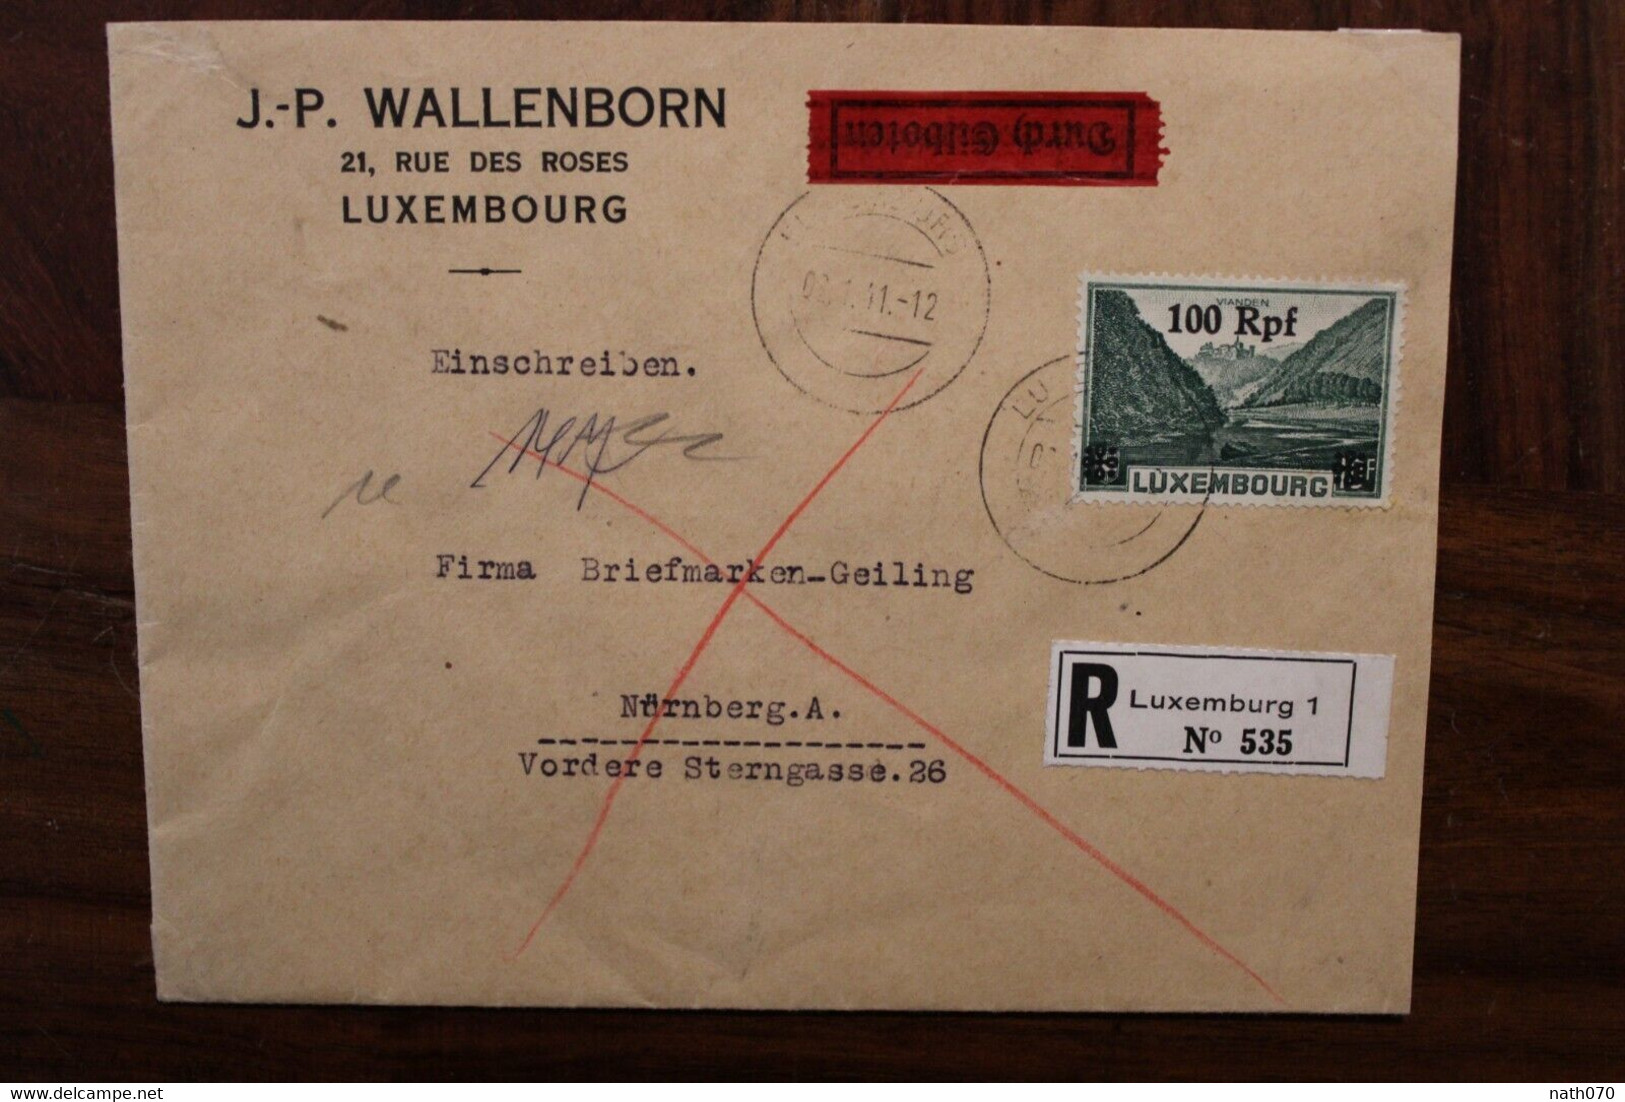 LUXEMBURG 1941 Durch Eilboten Einschreiben Cover Luxembourg Registered Recommandé Besetzung - 1940-1944 Occupation Allemande